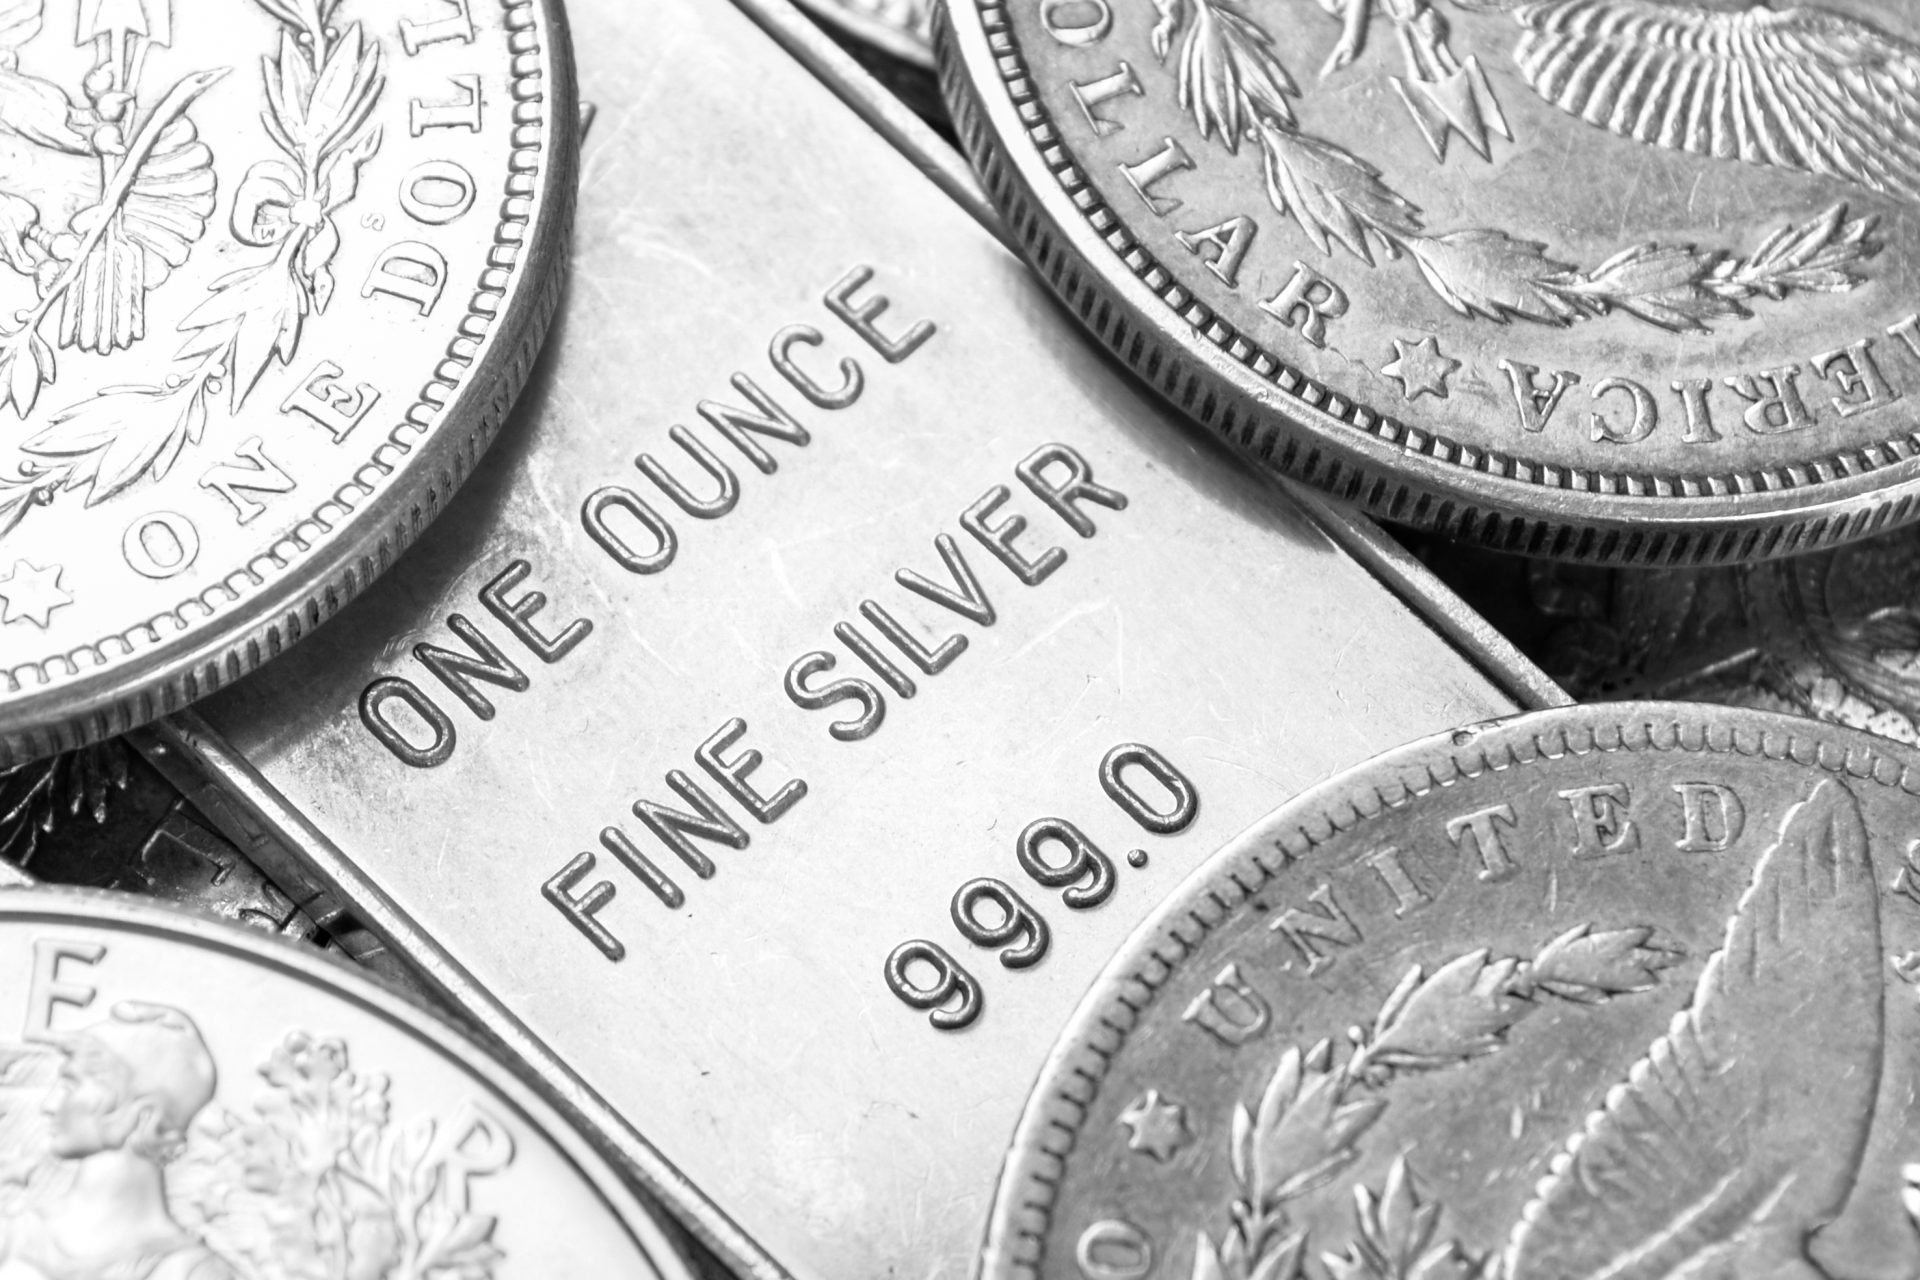 Dalle monete alle posate: qual è il valore dell’argento oggi?